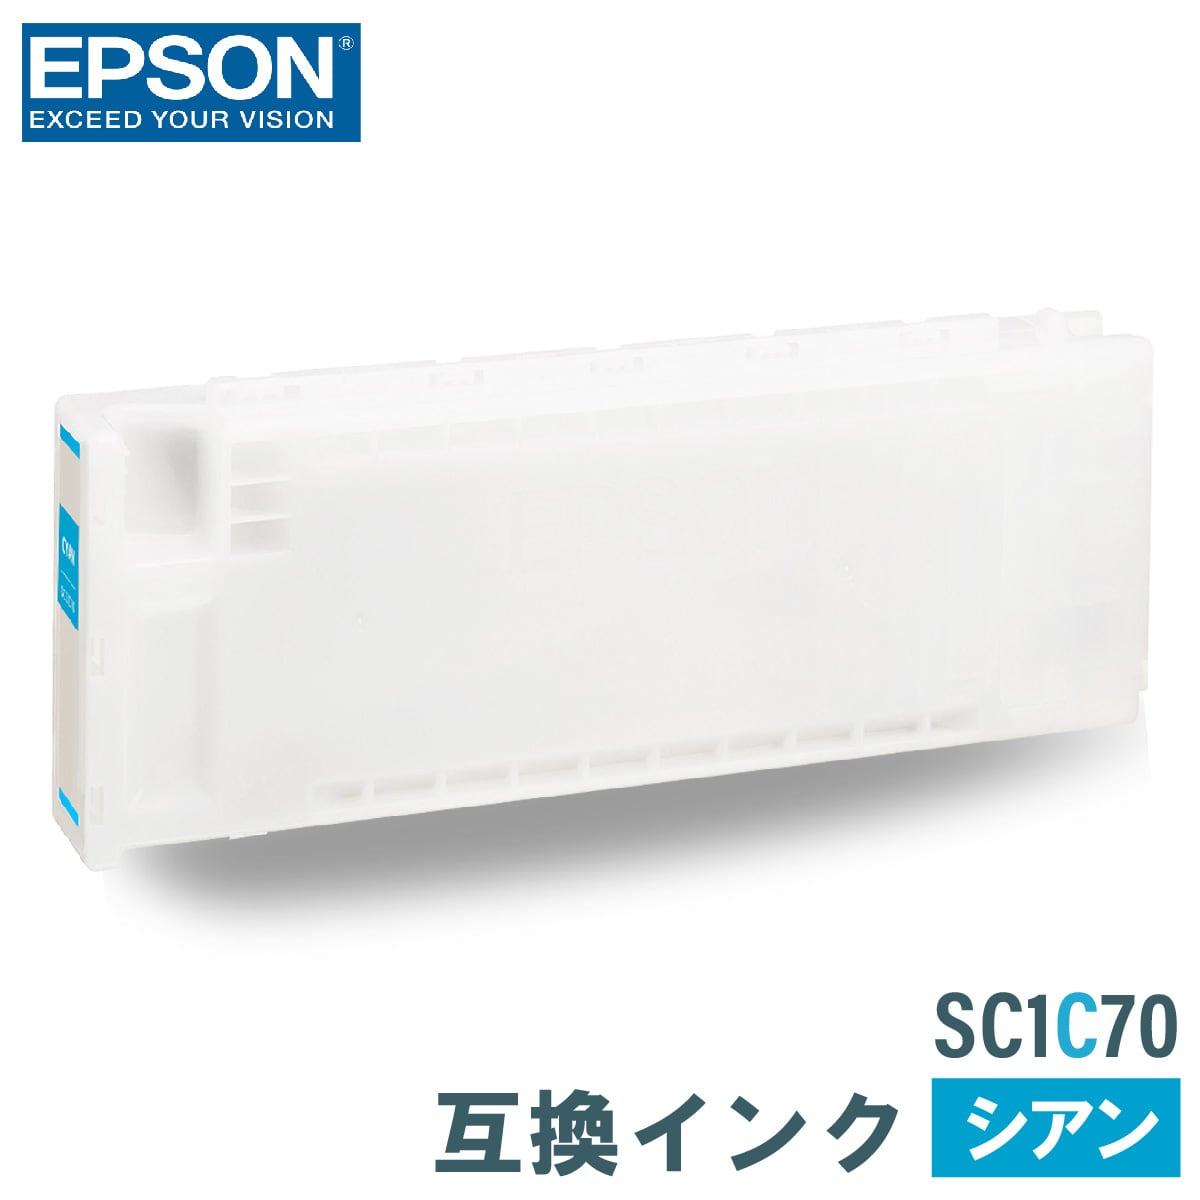 エプソン 互換インク EPSON SC1C70 シアン 700ml 互換インク、ロール紙販売のPRINKS(プリンクス)